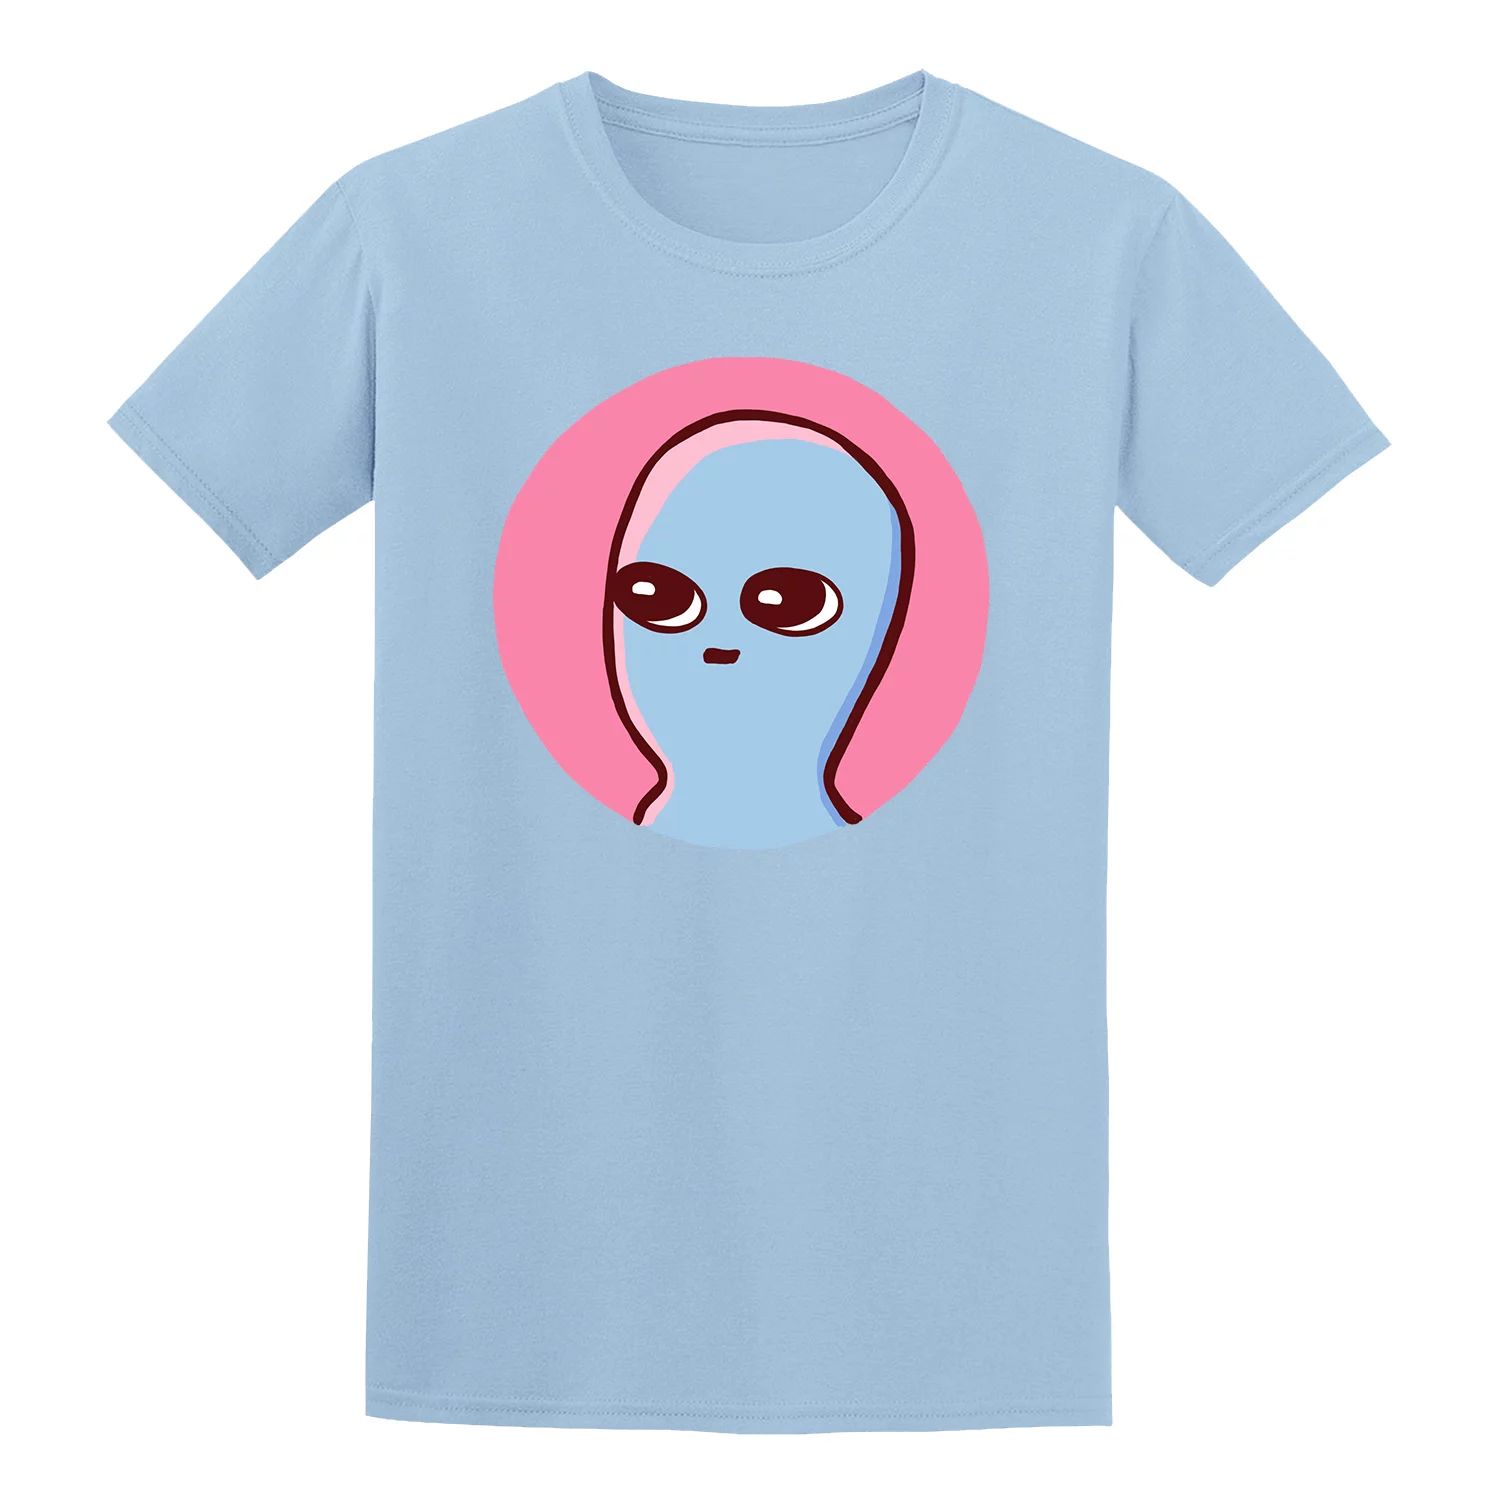 Мужская футболка COLAB89 от Threadless Strange Planet COLAB89 by Threadless